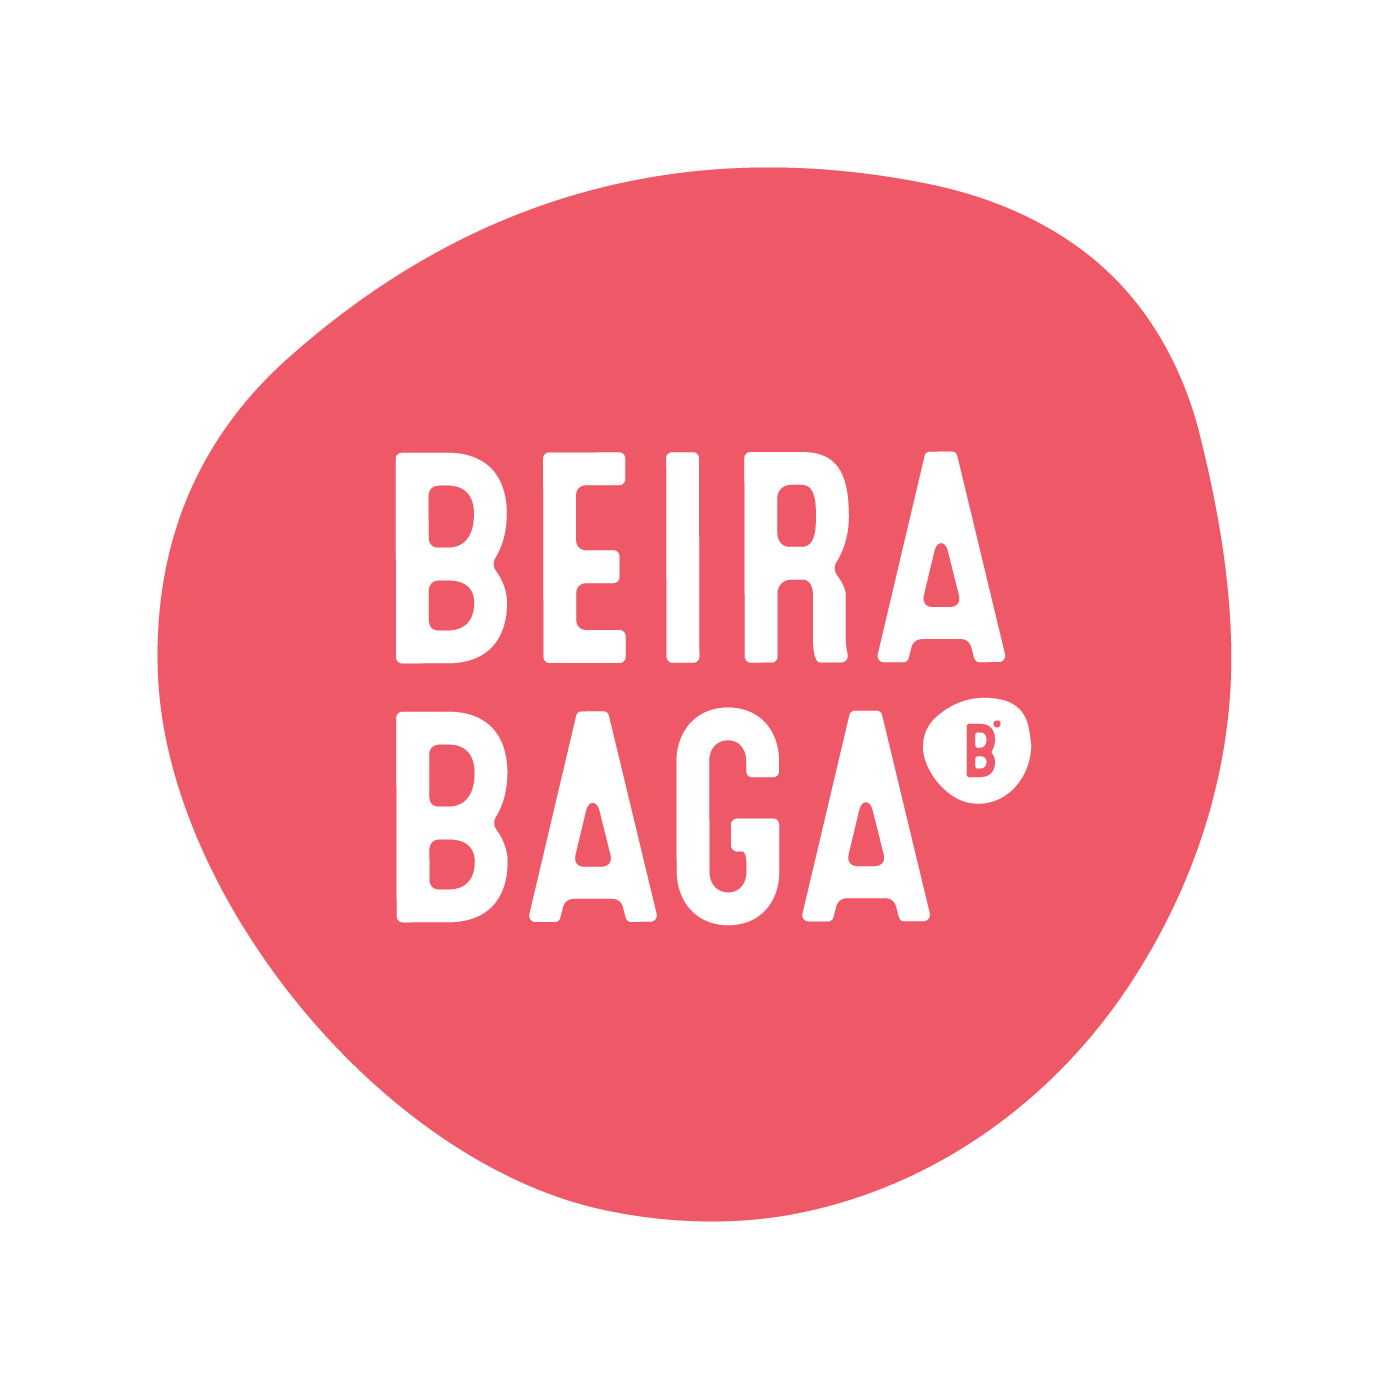 (c) Beirabaga.pt